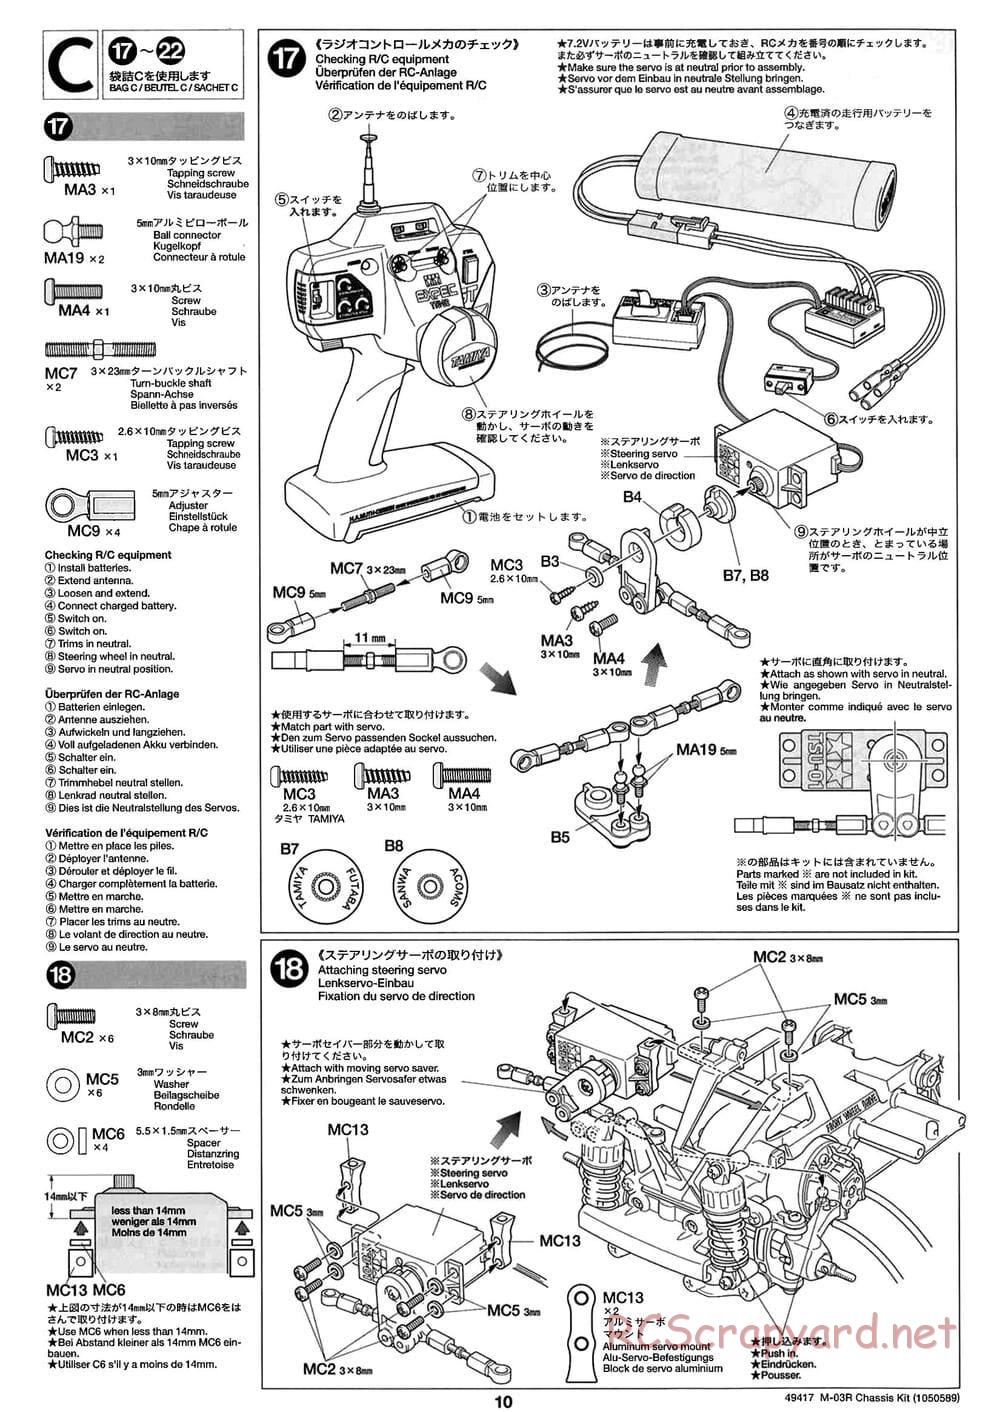 Tamiya - M-03R Chassis - Manual - Page 10